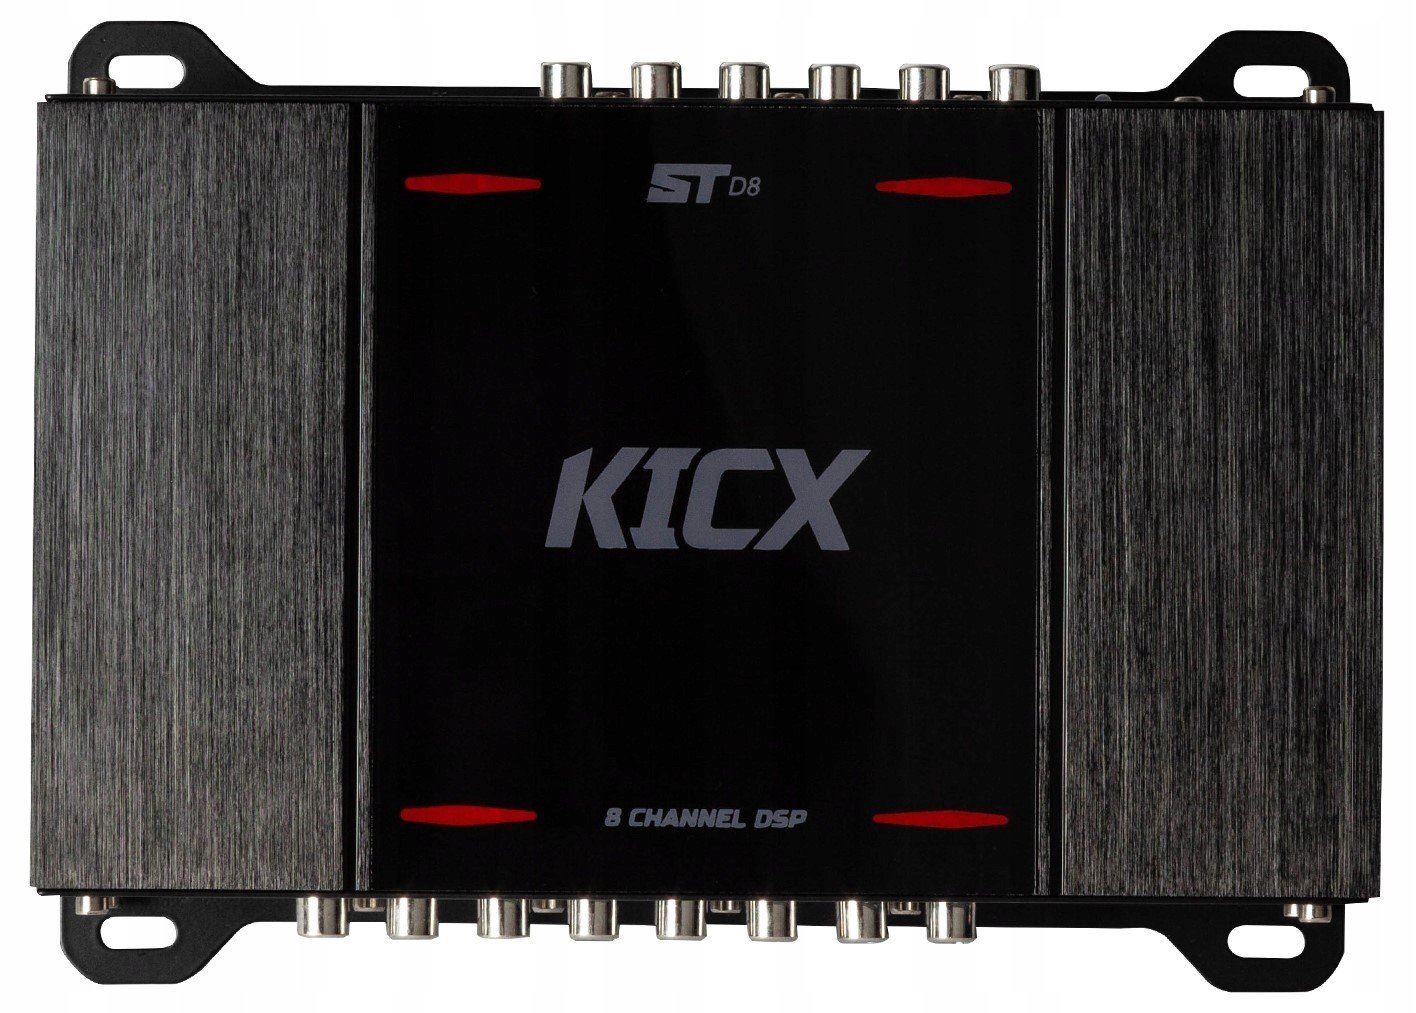 Kicx St D8 4kanálový zesilovač s vestavěným 8kanálovým Dsp Procesorem